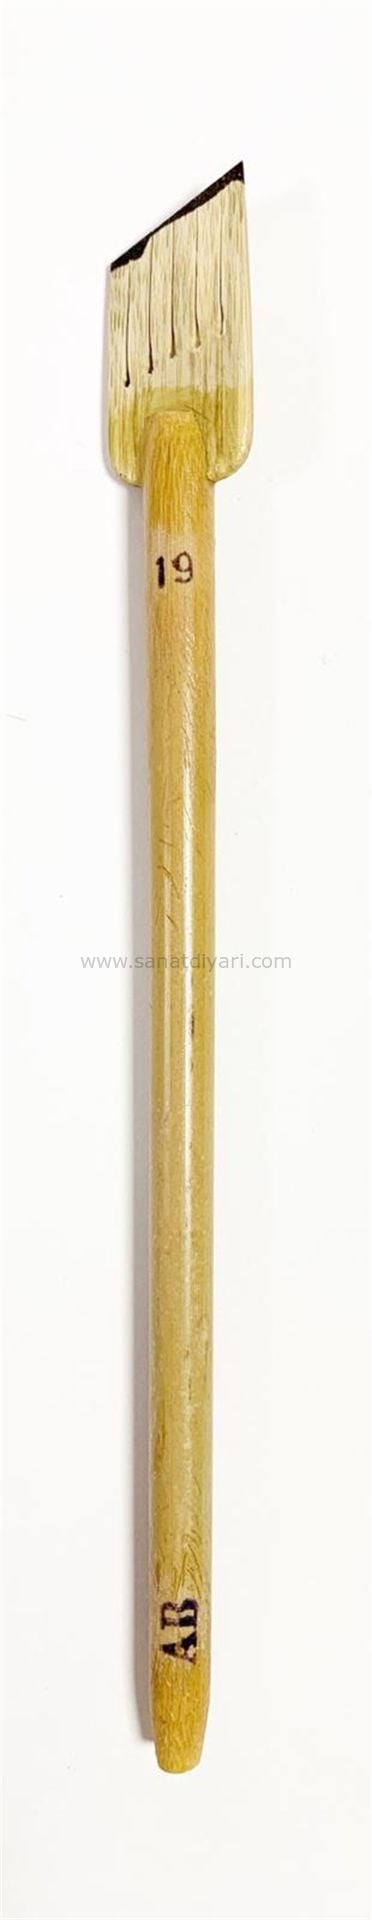 Tiryakiart Şaklı Bambu Kalem 19 mm